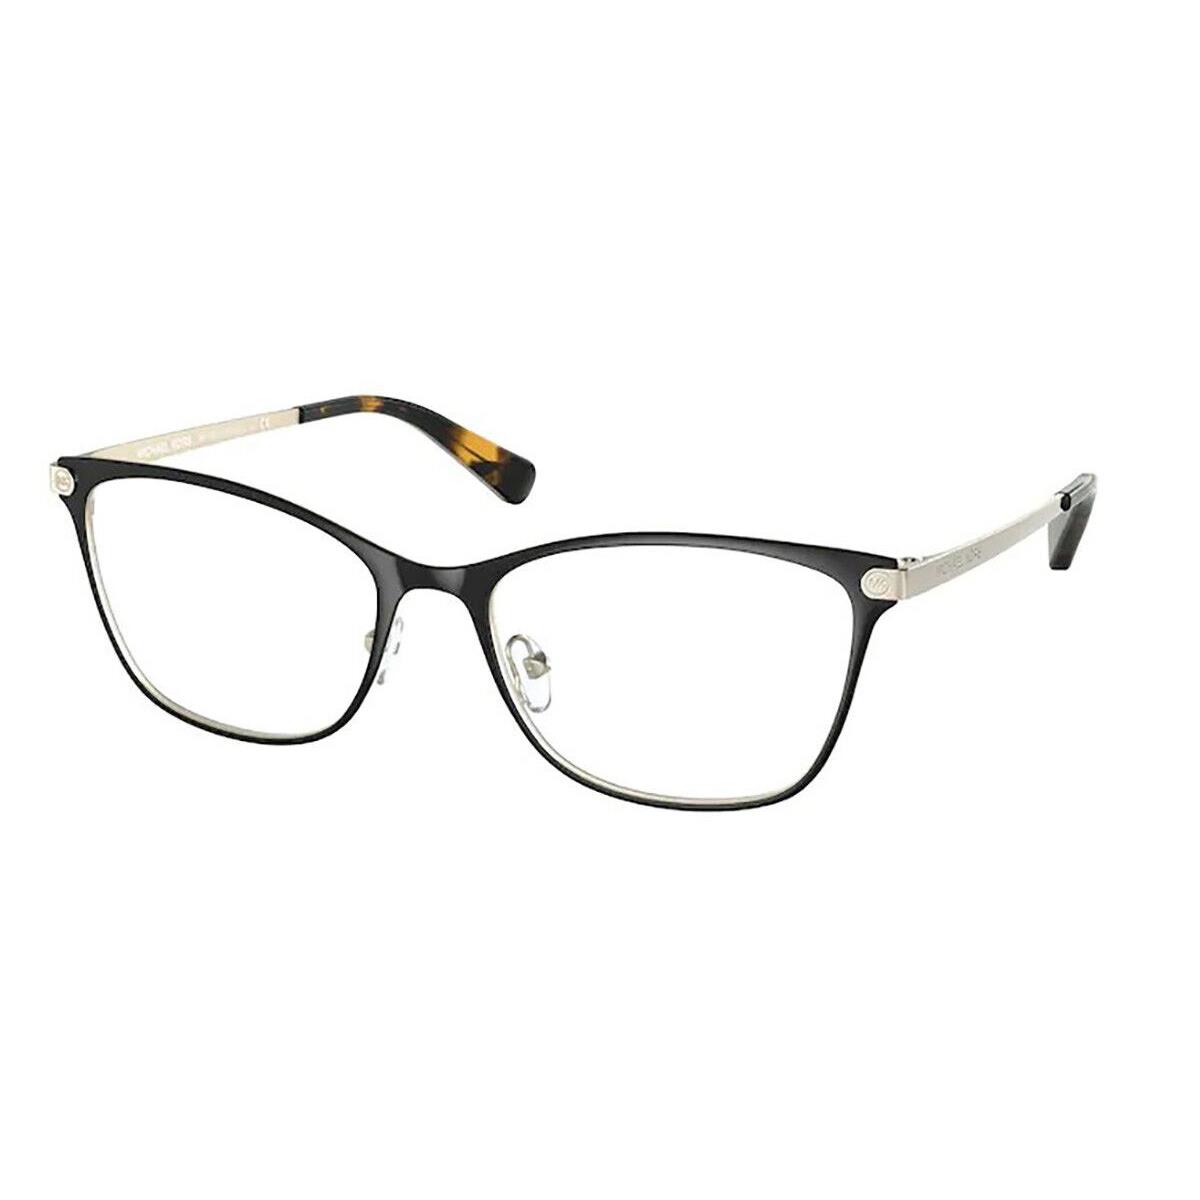 Michael Kors MK3050-1334-51 Black Gold Eyeglasses